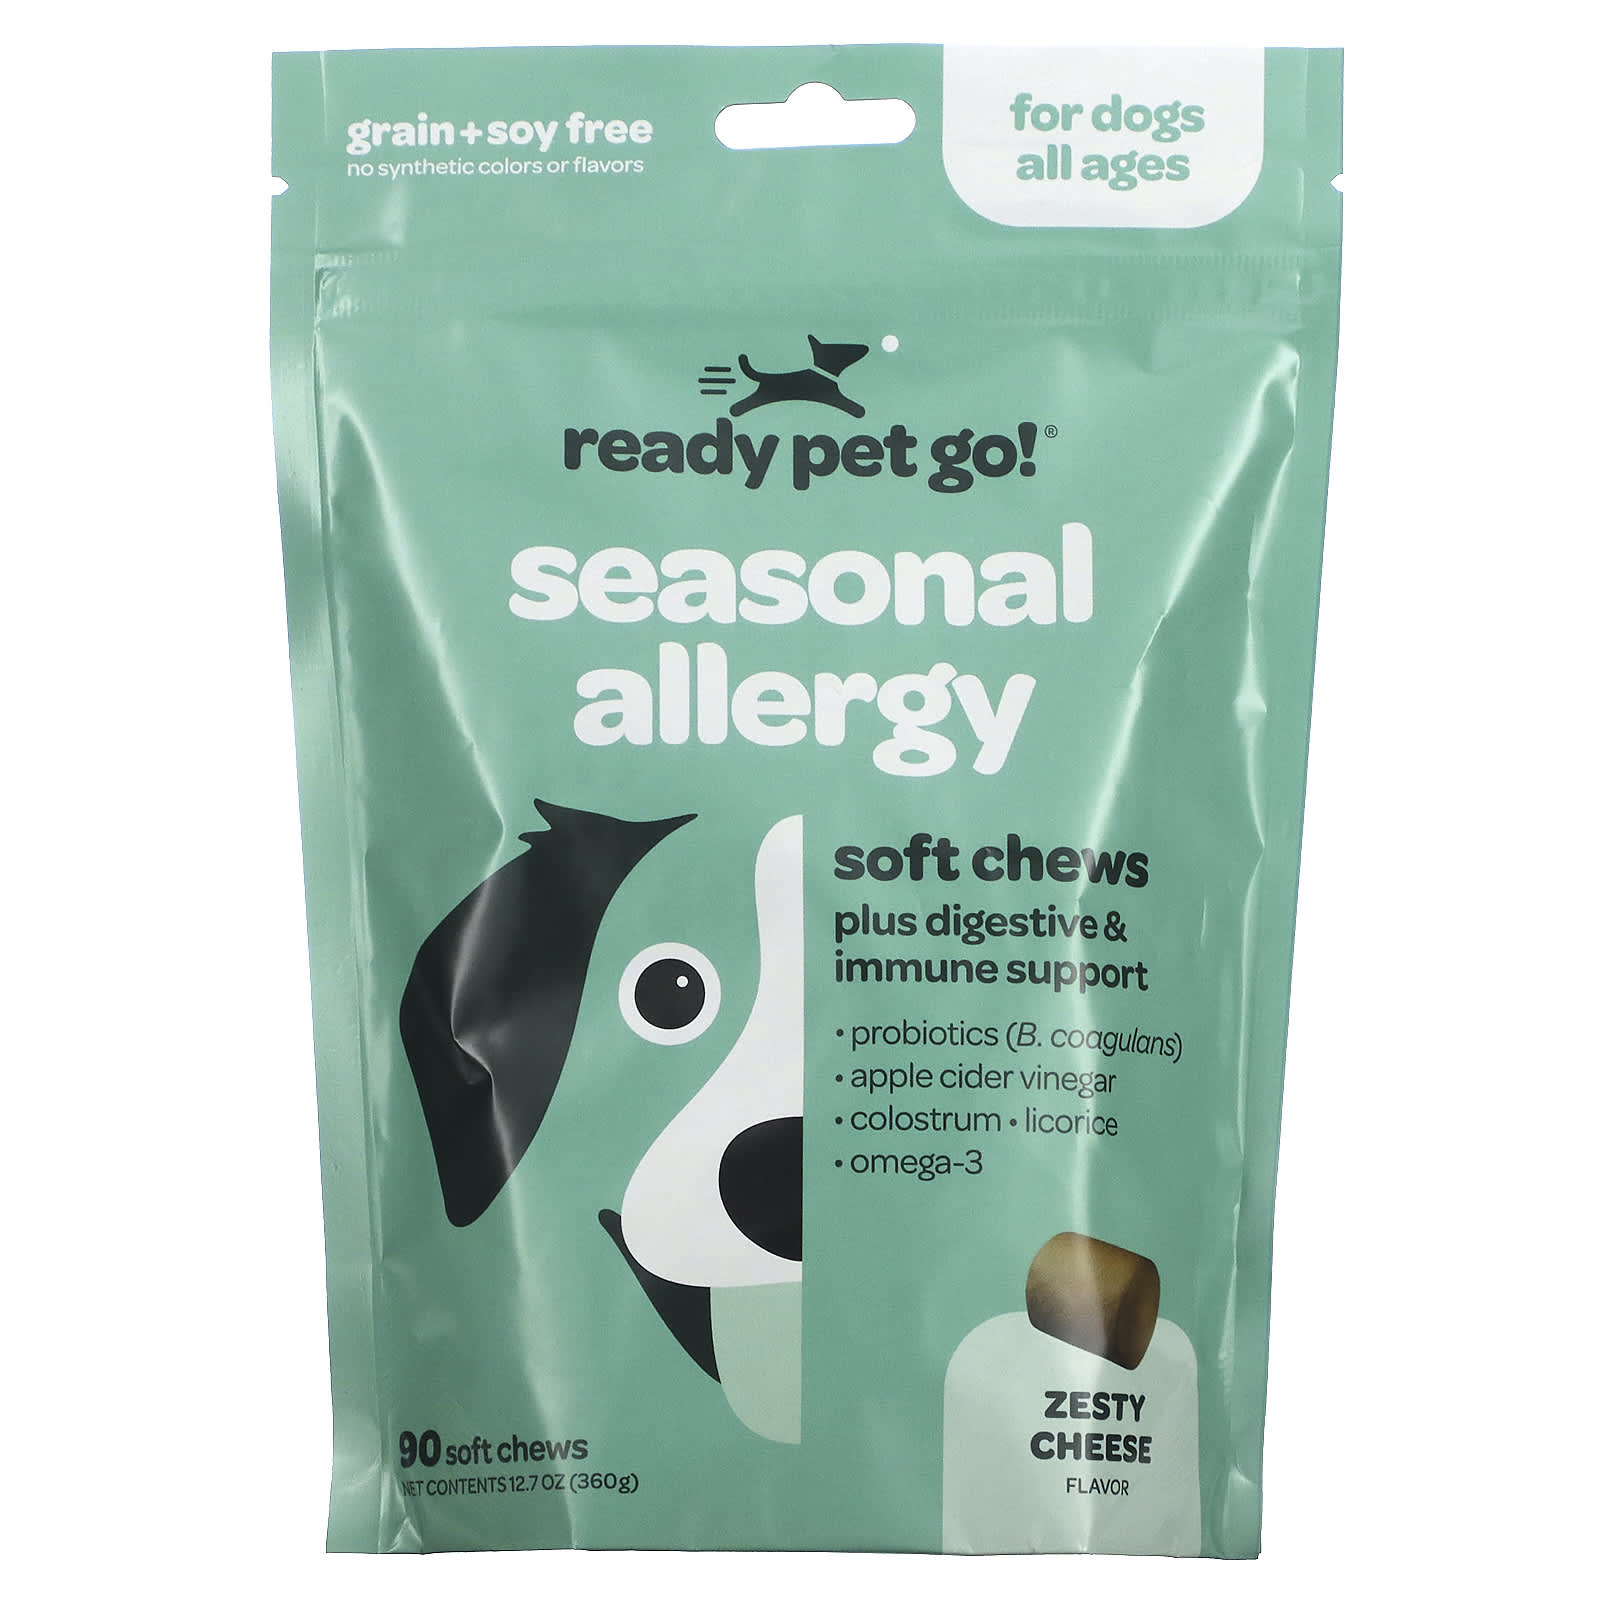 Жевательные Таблетки для Собак Ready Pet Go для борьбы с аллергией и иммунитетом, с сыром, 90 жевательных таблеток